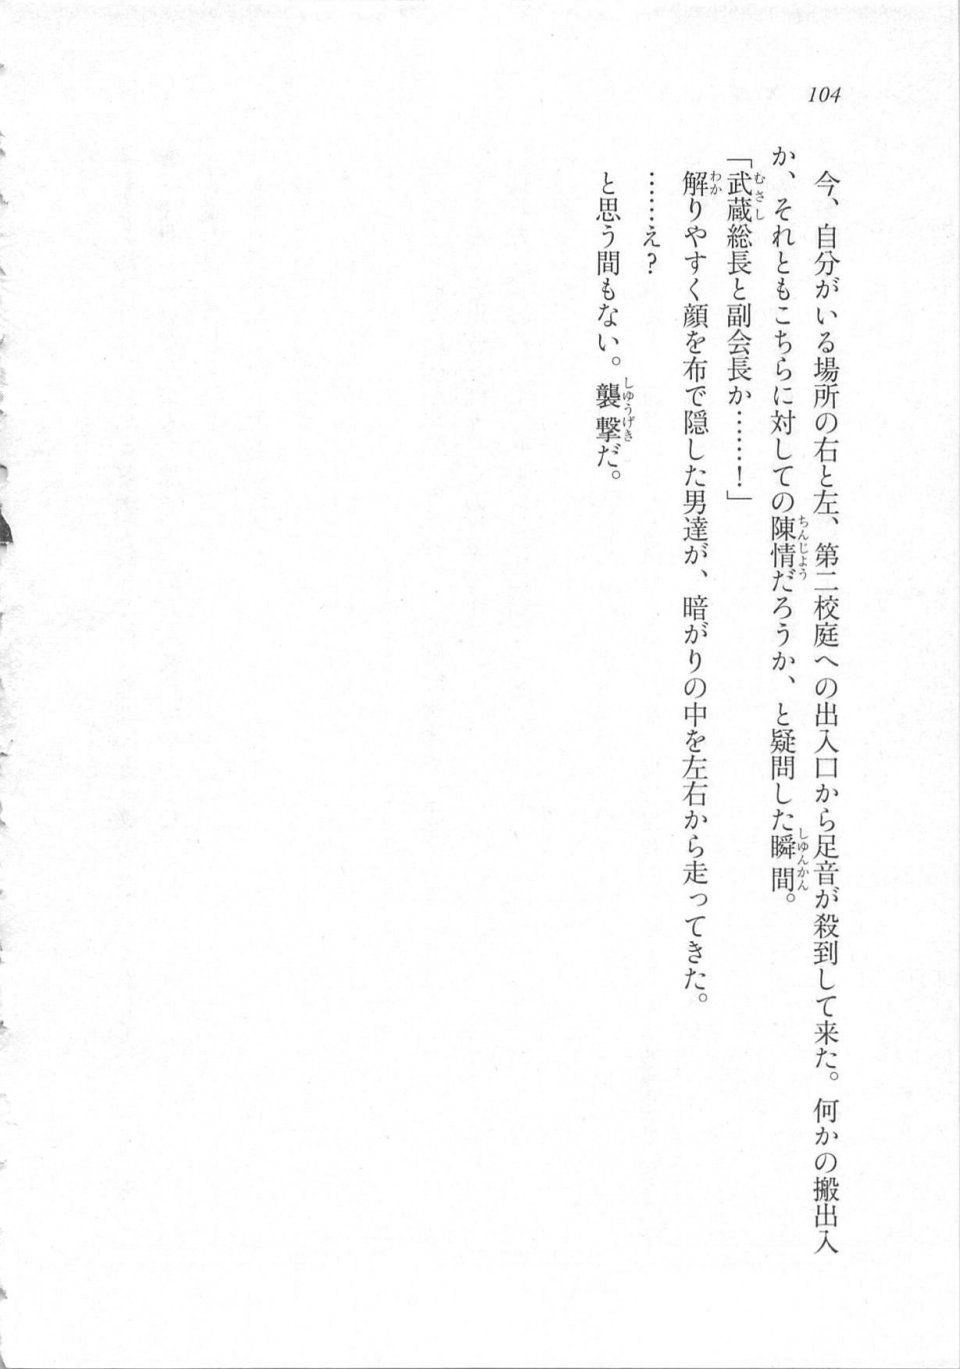 Kyoukai Senjou no Horizon LN Sidestory Vol 3 - Photo #108